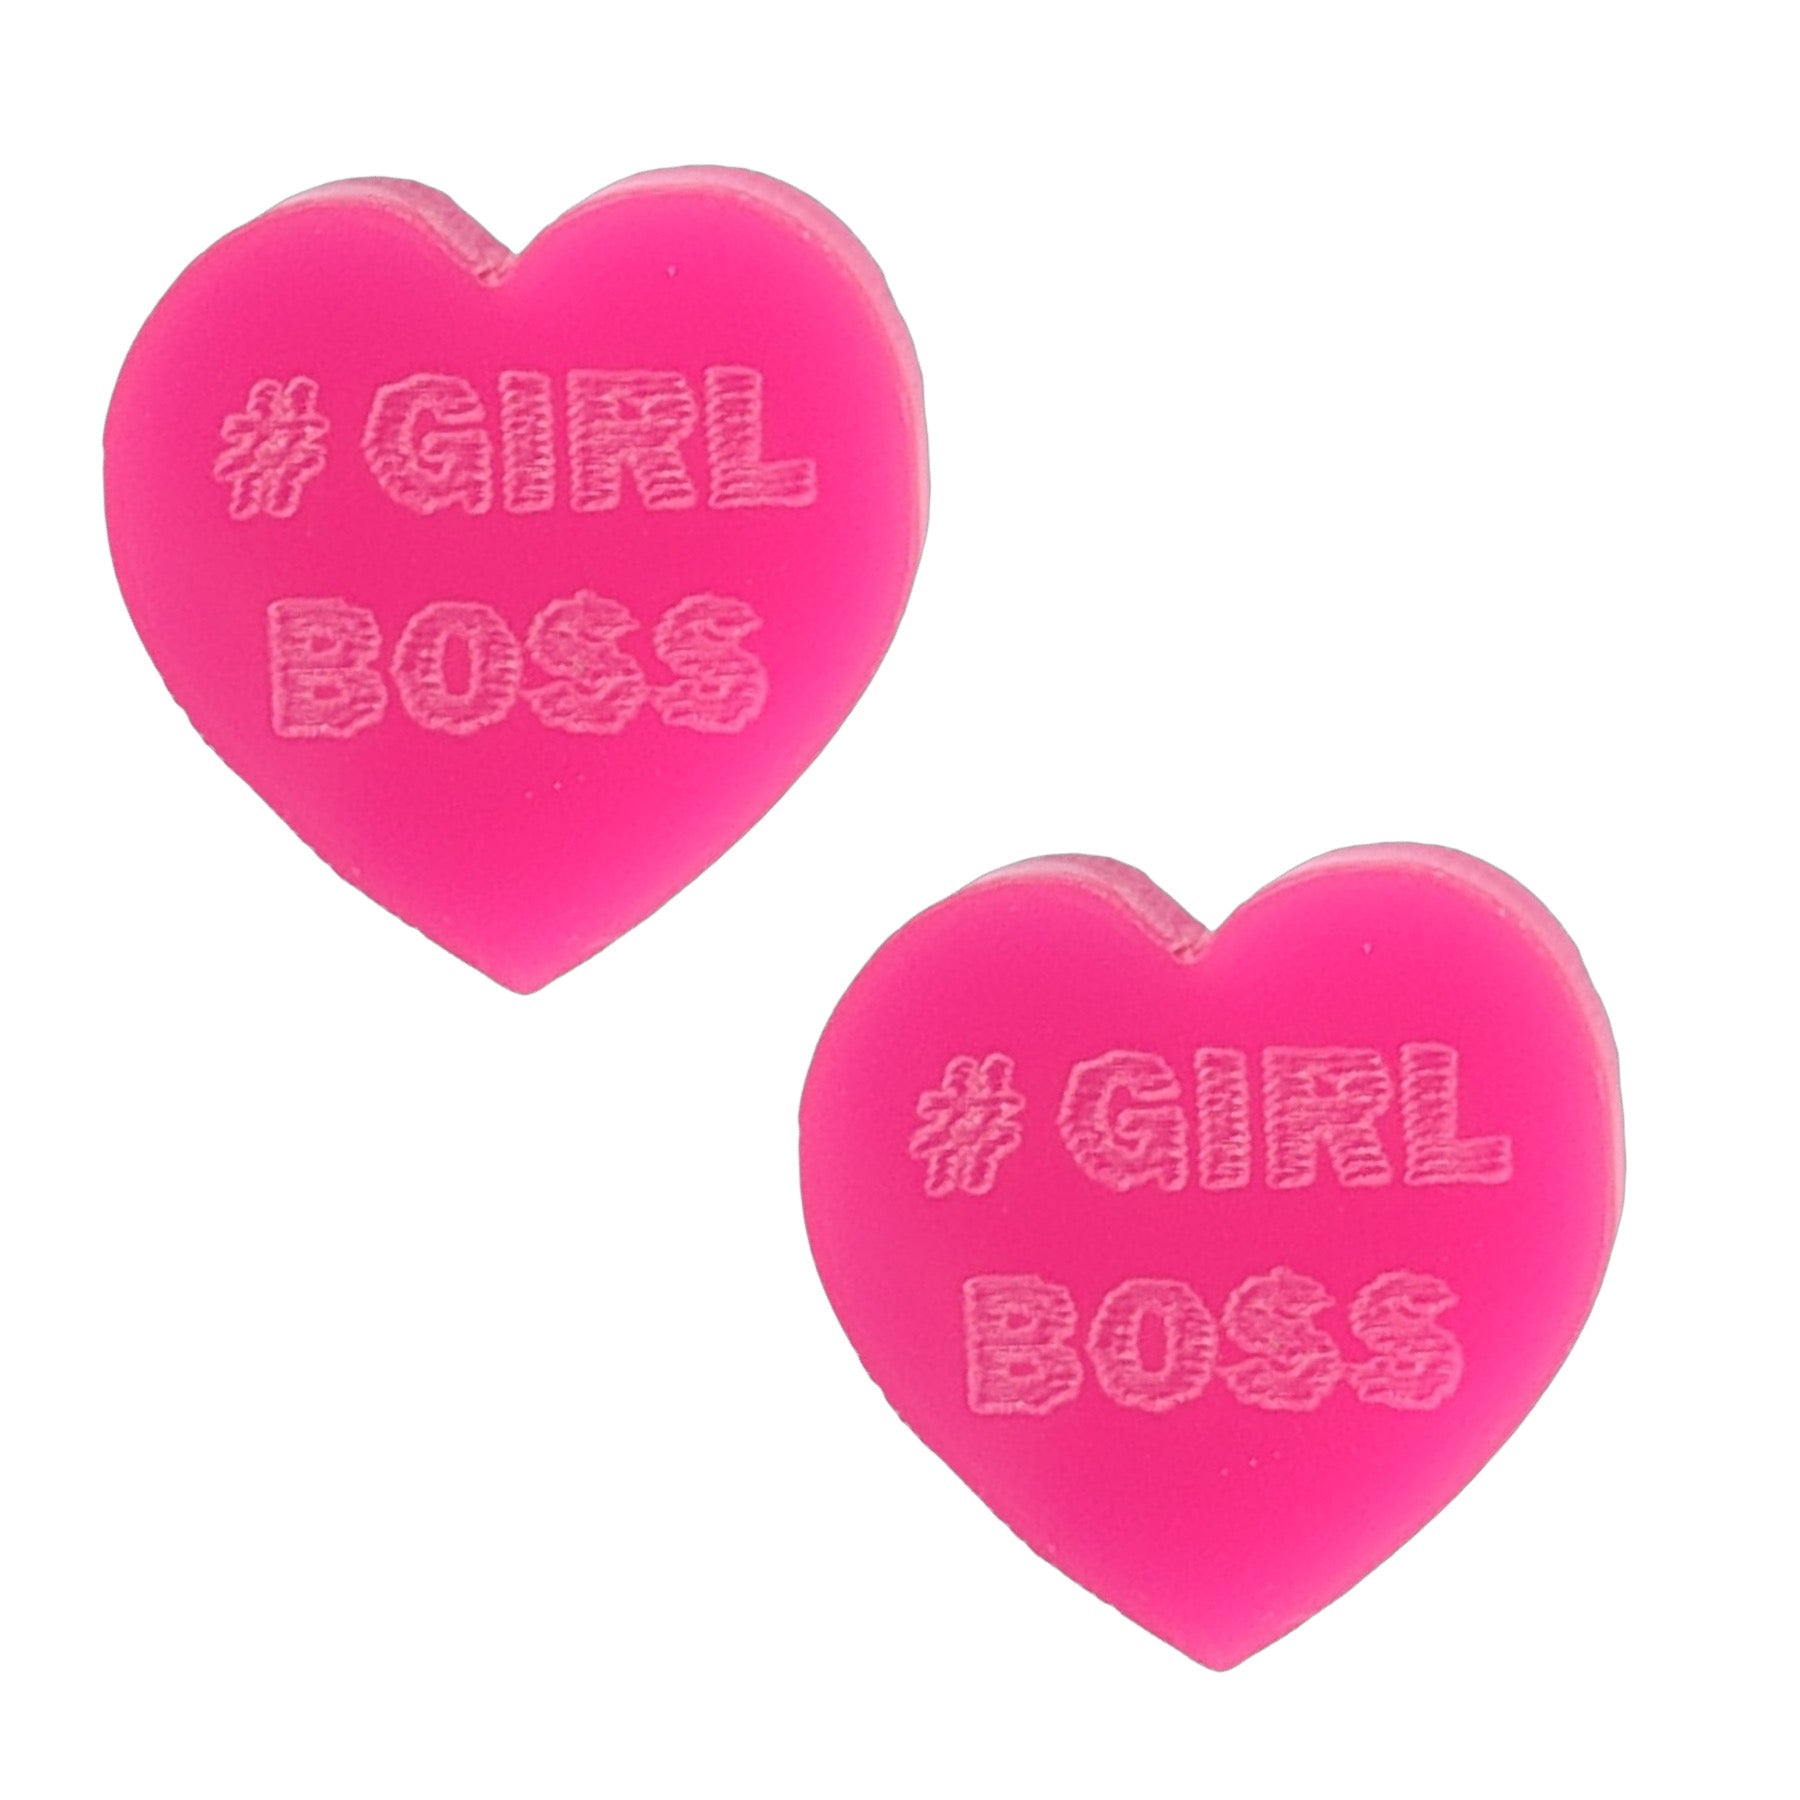 Conversation Hearts Earrings (Studs) - #GIRL BOSS (hot pink)